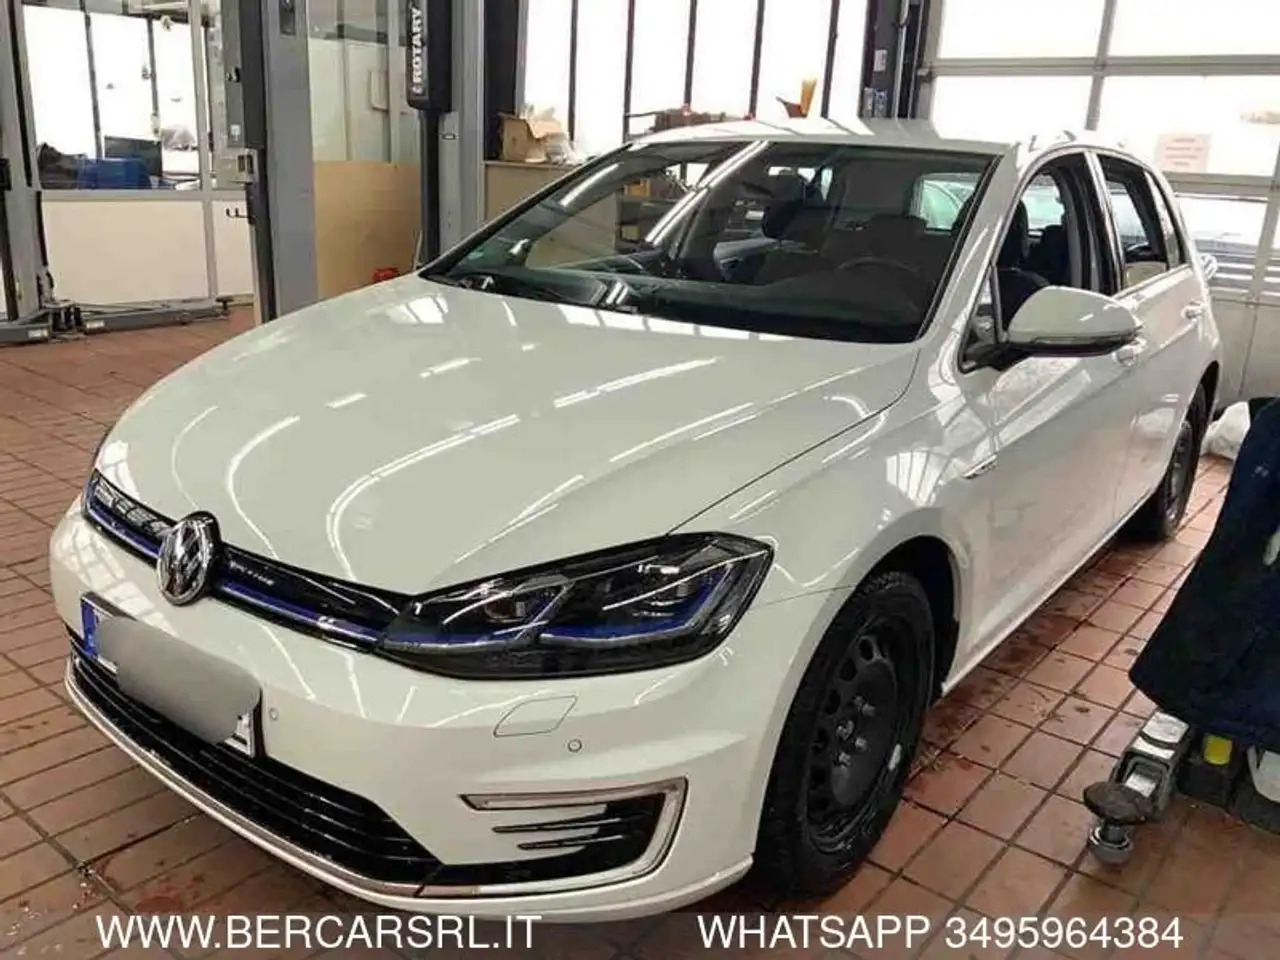 Volkswagen e-Golf Berline in Wit tweedehands in Cadidavid - Verona - Vr voor € 18.900,-